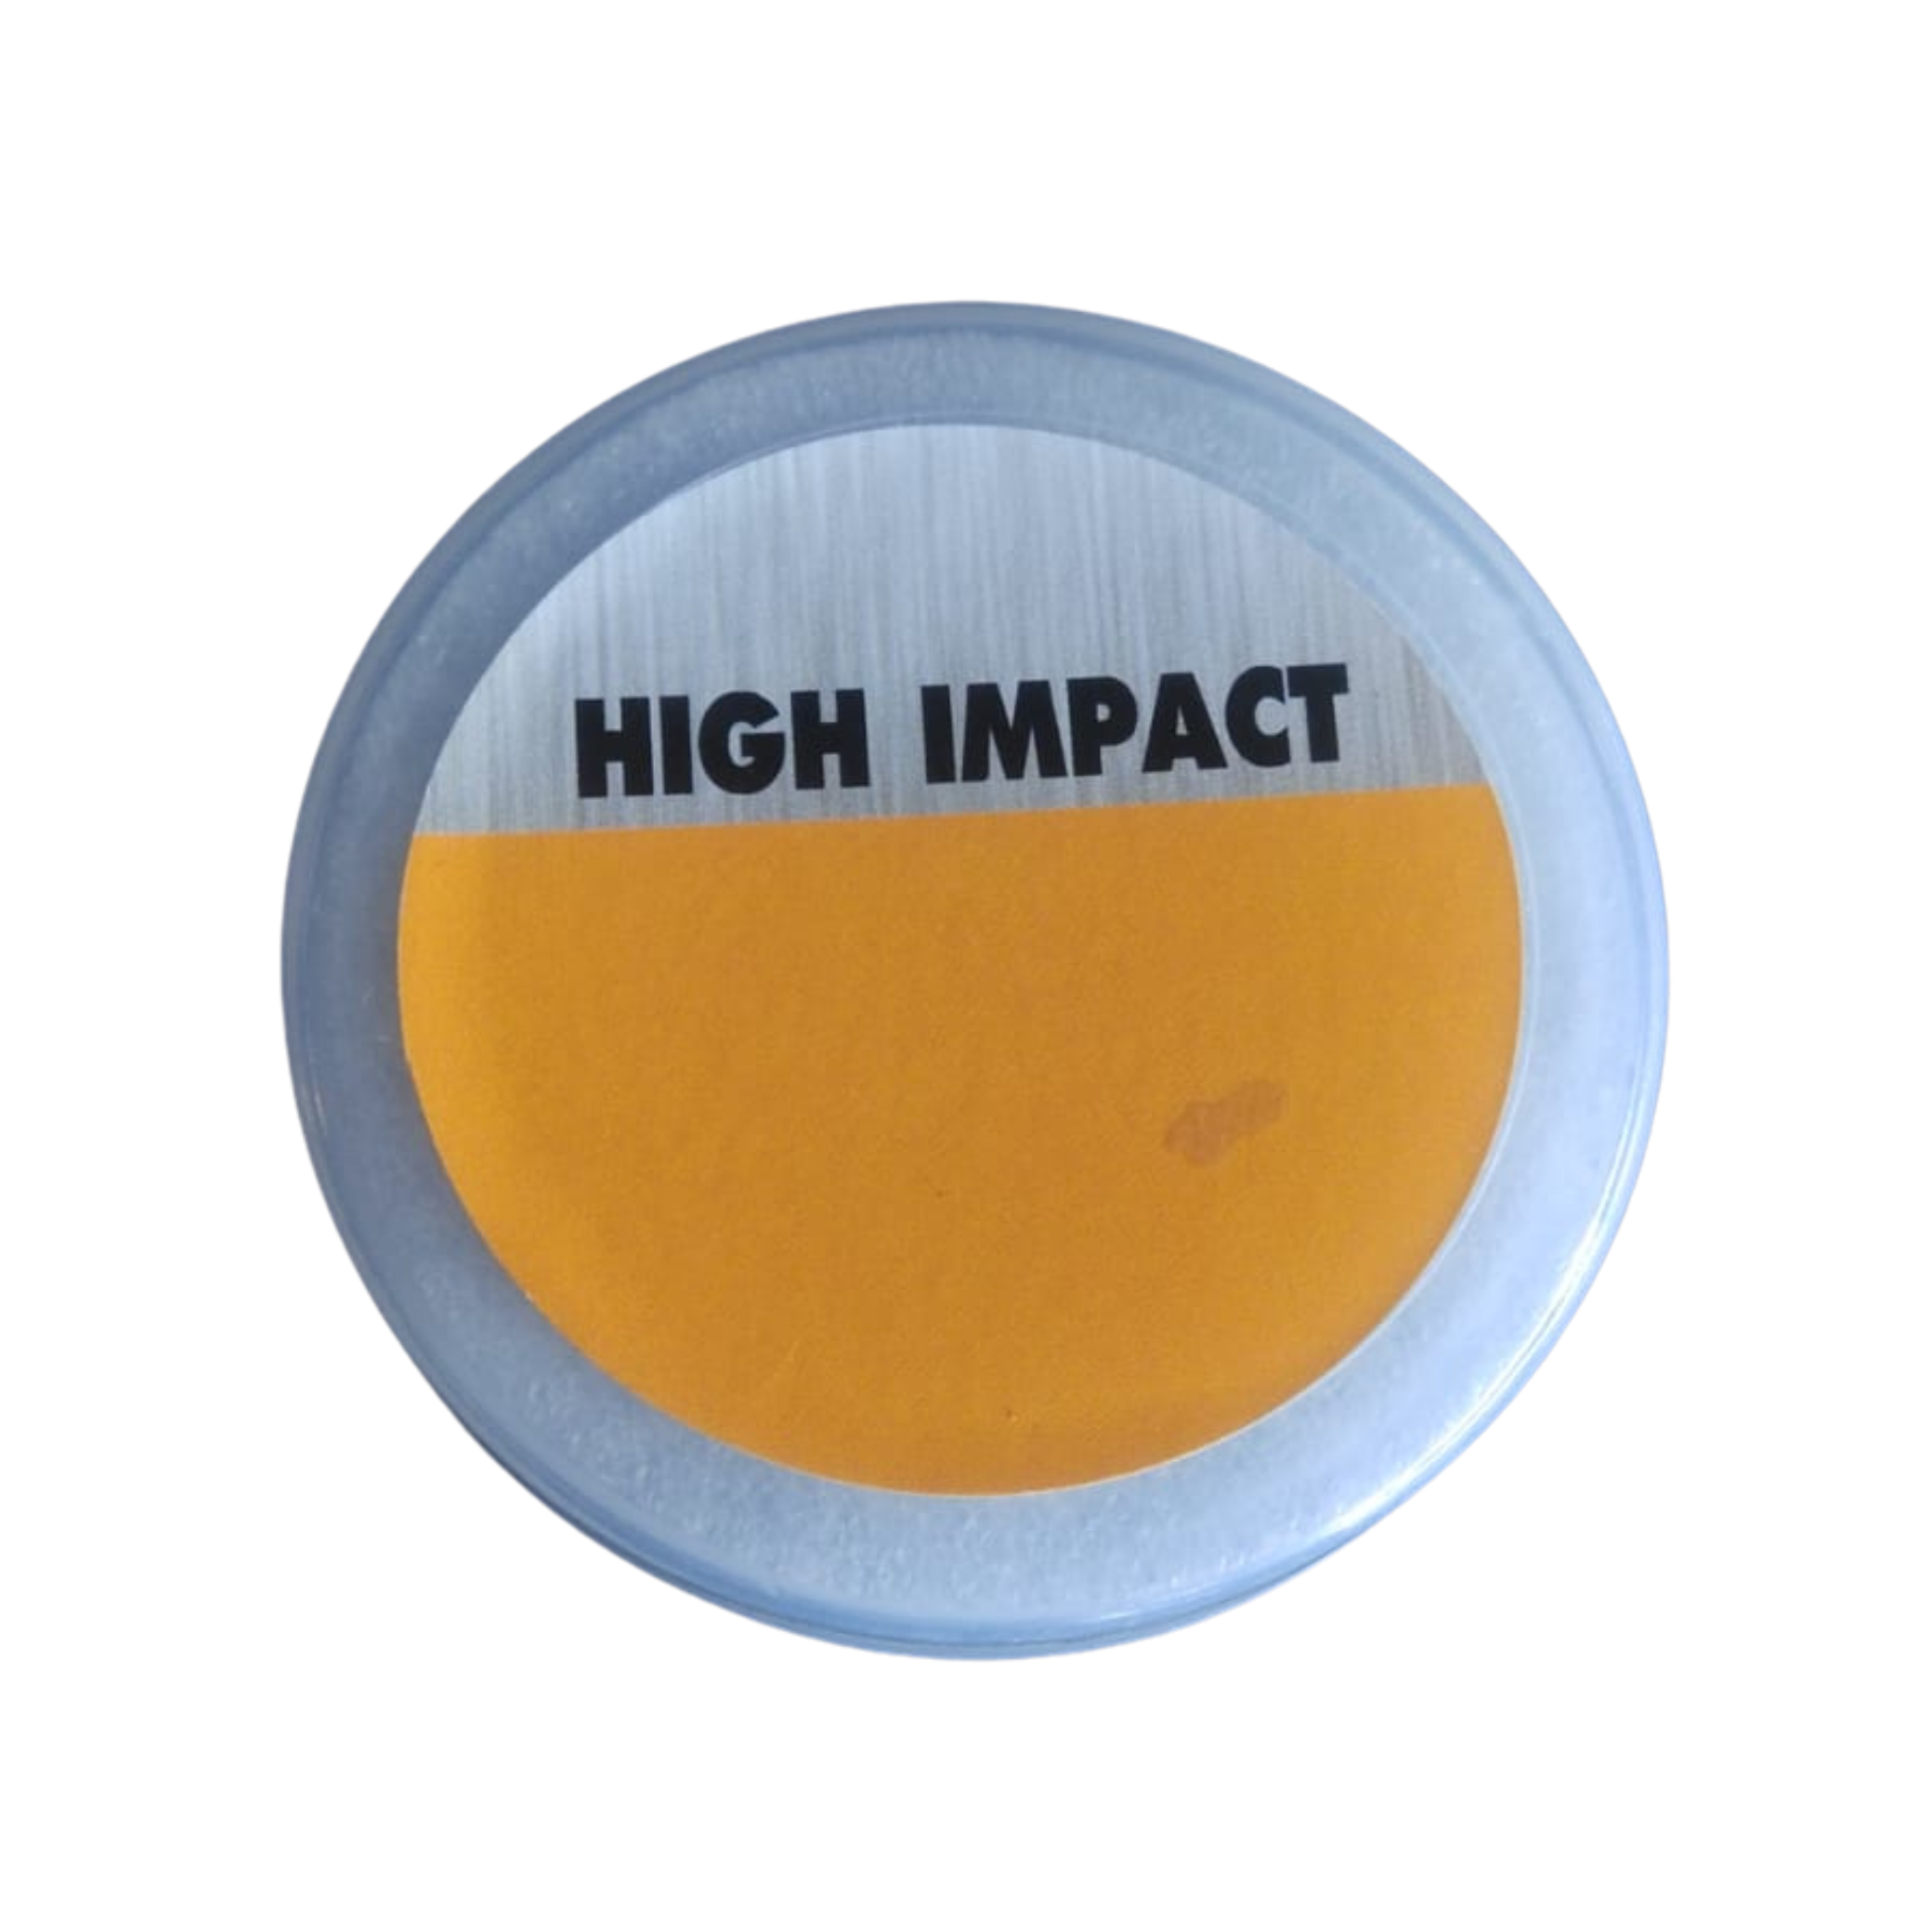 G Smith & Co High Impact 0.22(5.5mm) 200/Tin, 15.2gr, Airgun Pellets